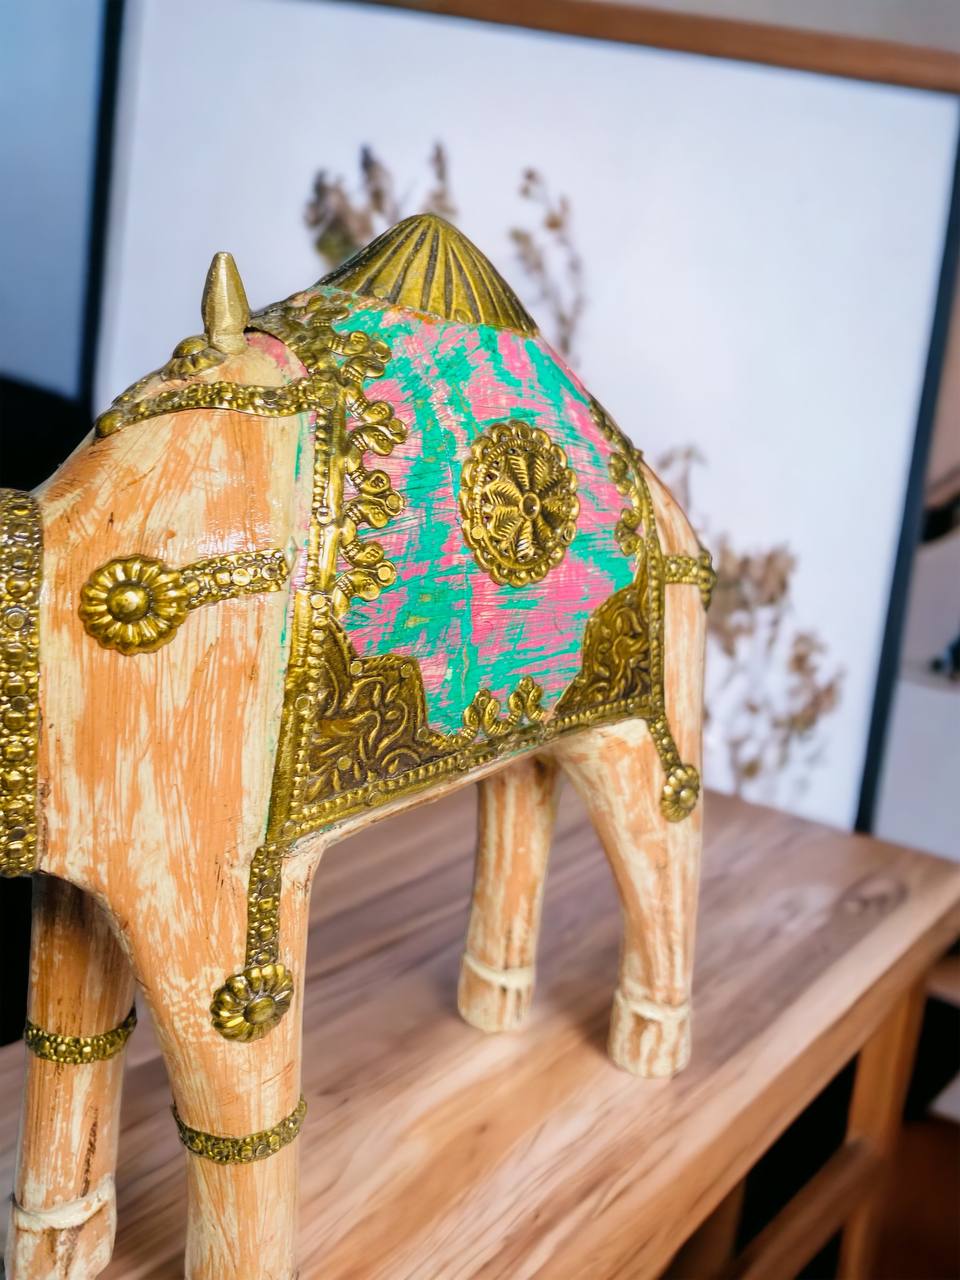 Figura de Camello "Encanto Oriental" - Madera Tallada con Apliques en Bronce, Diseño Vintage y Toques Dorados